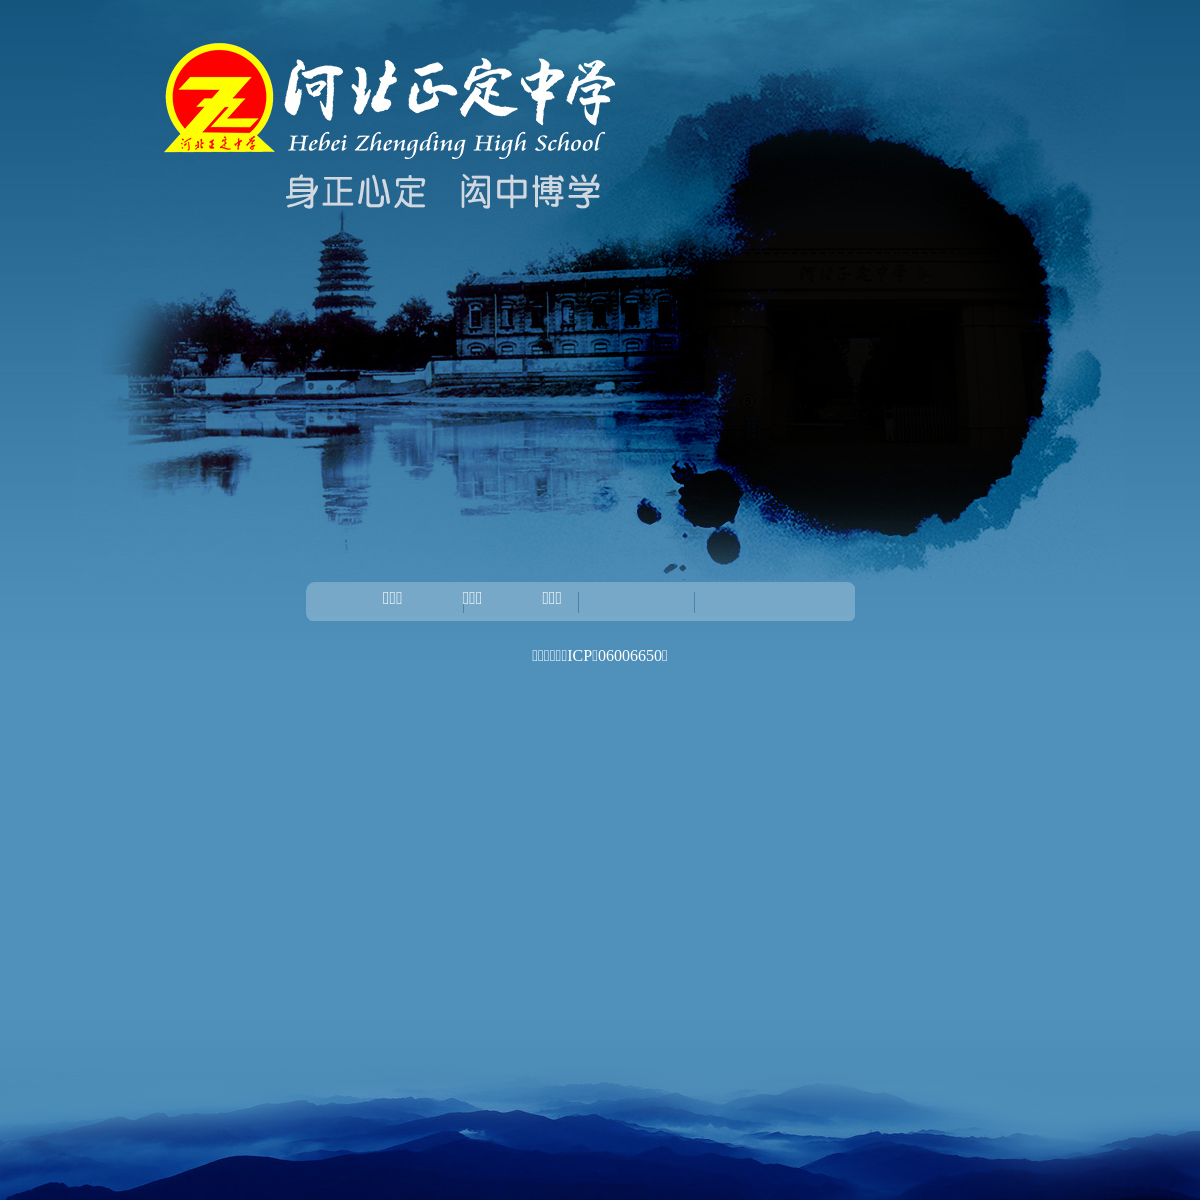 A complete backup of zhengzhong.net.cn